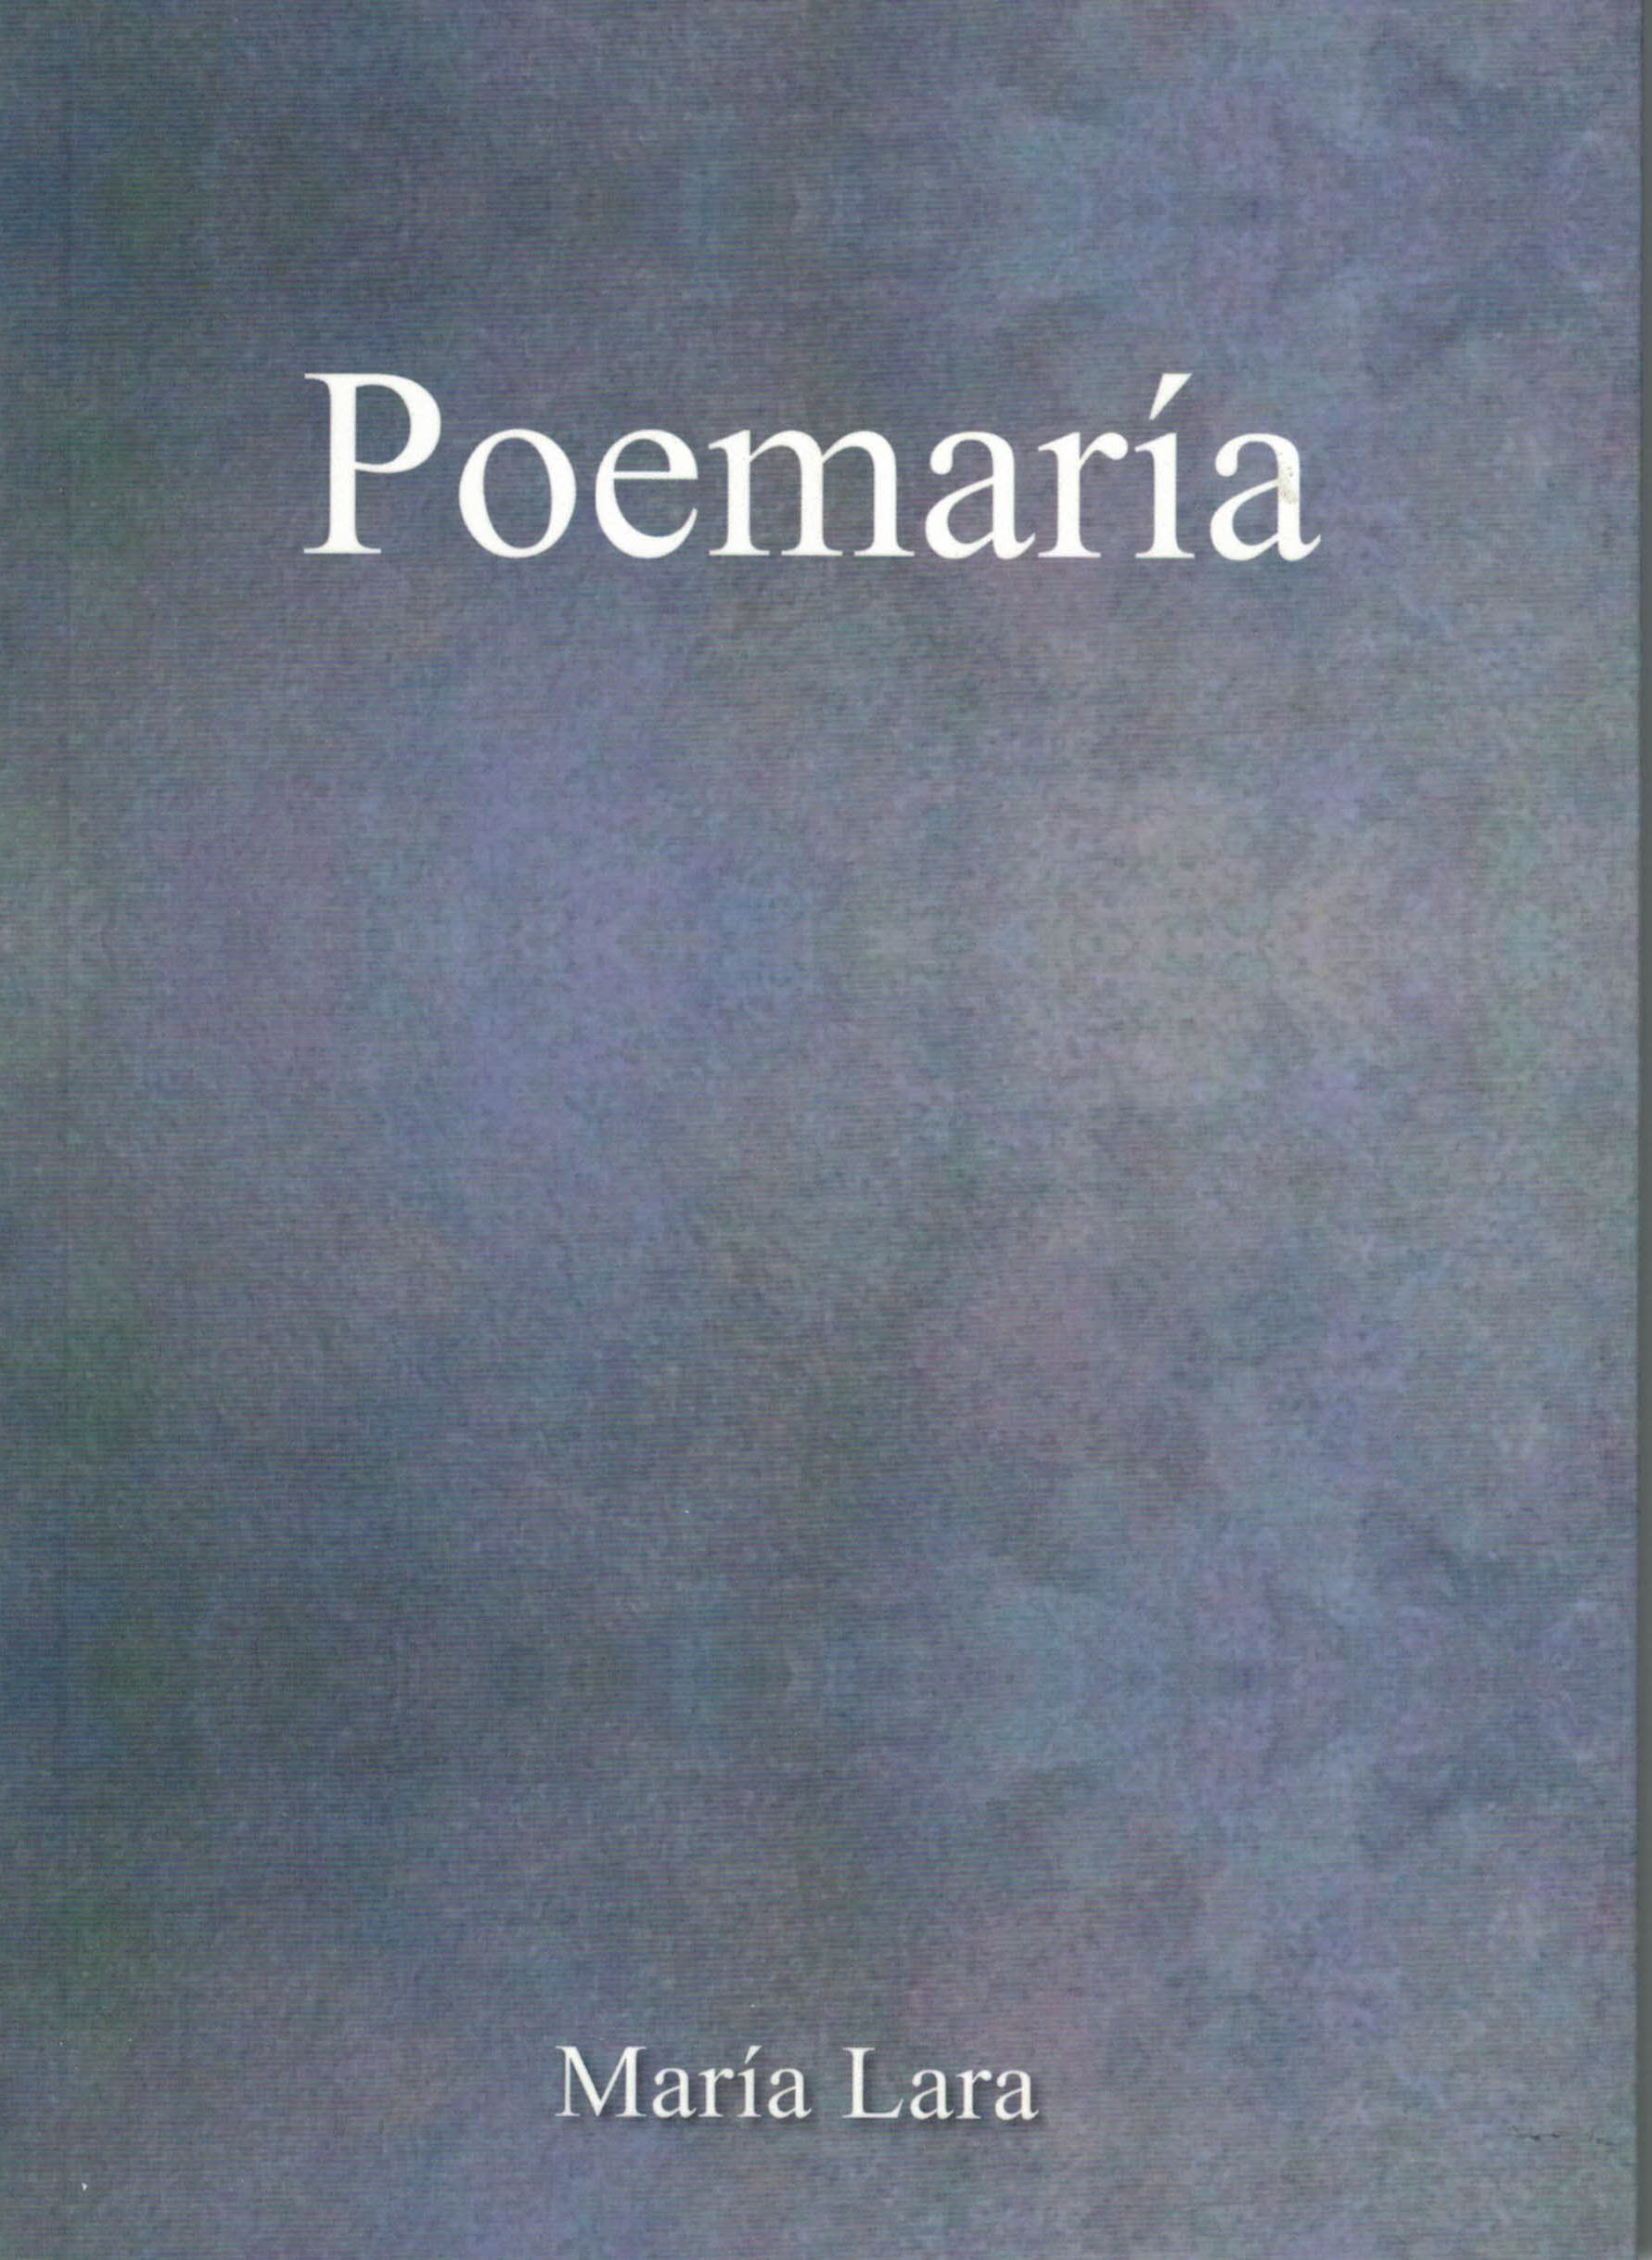 Poemaria, María Lara